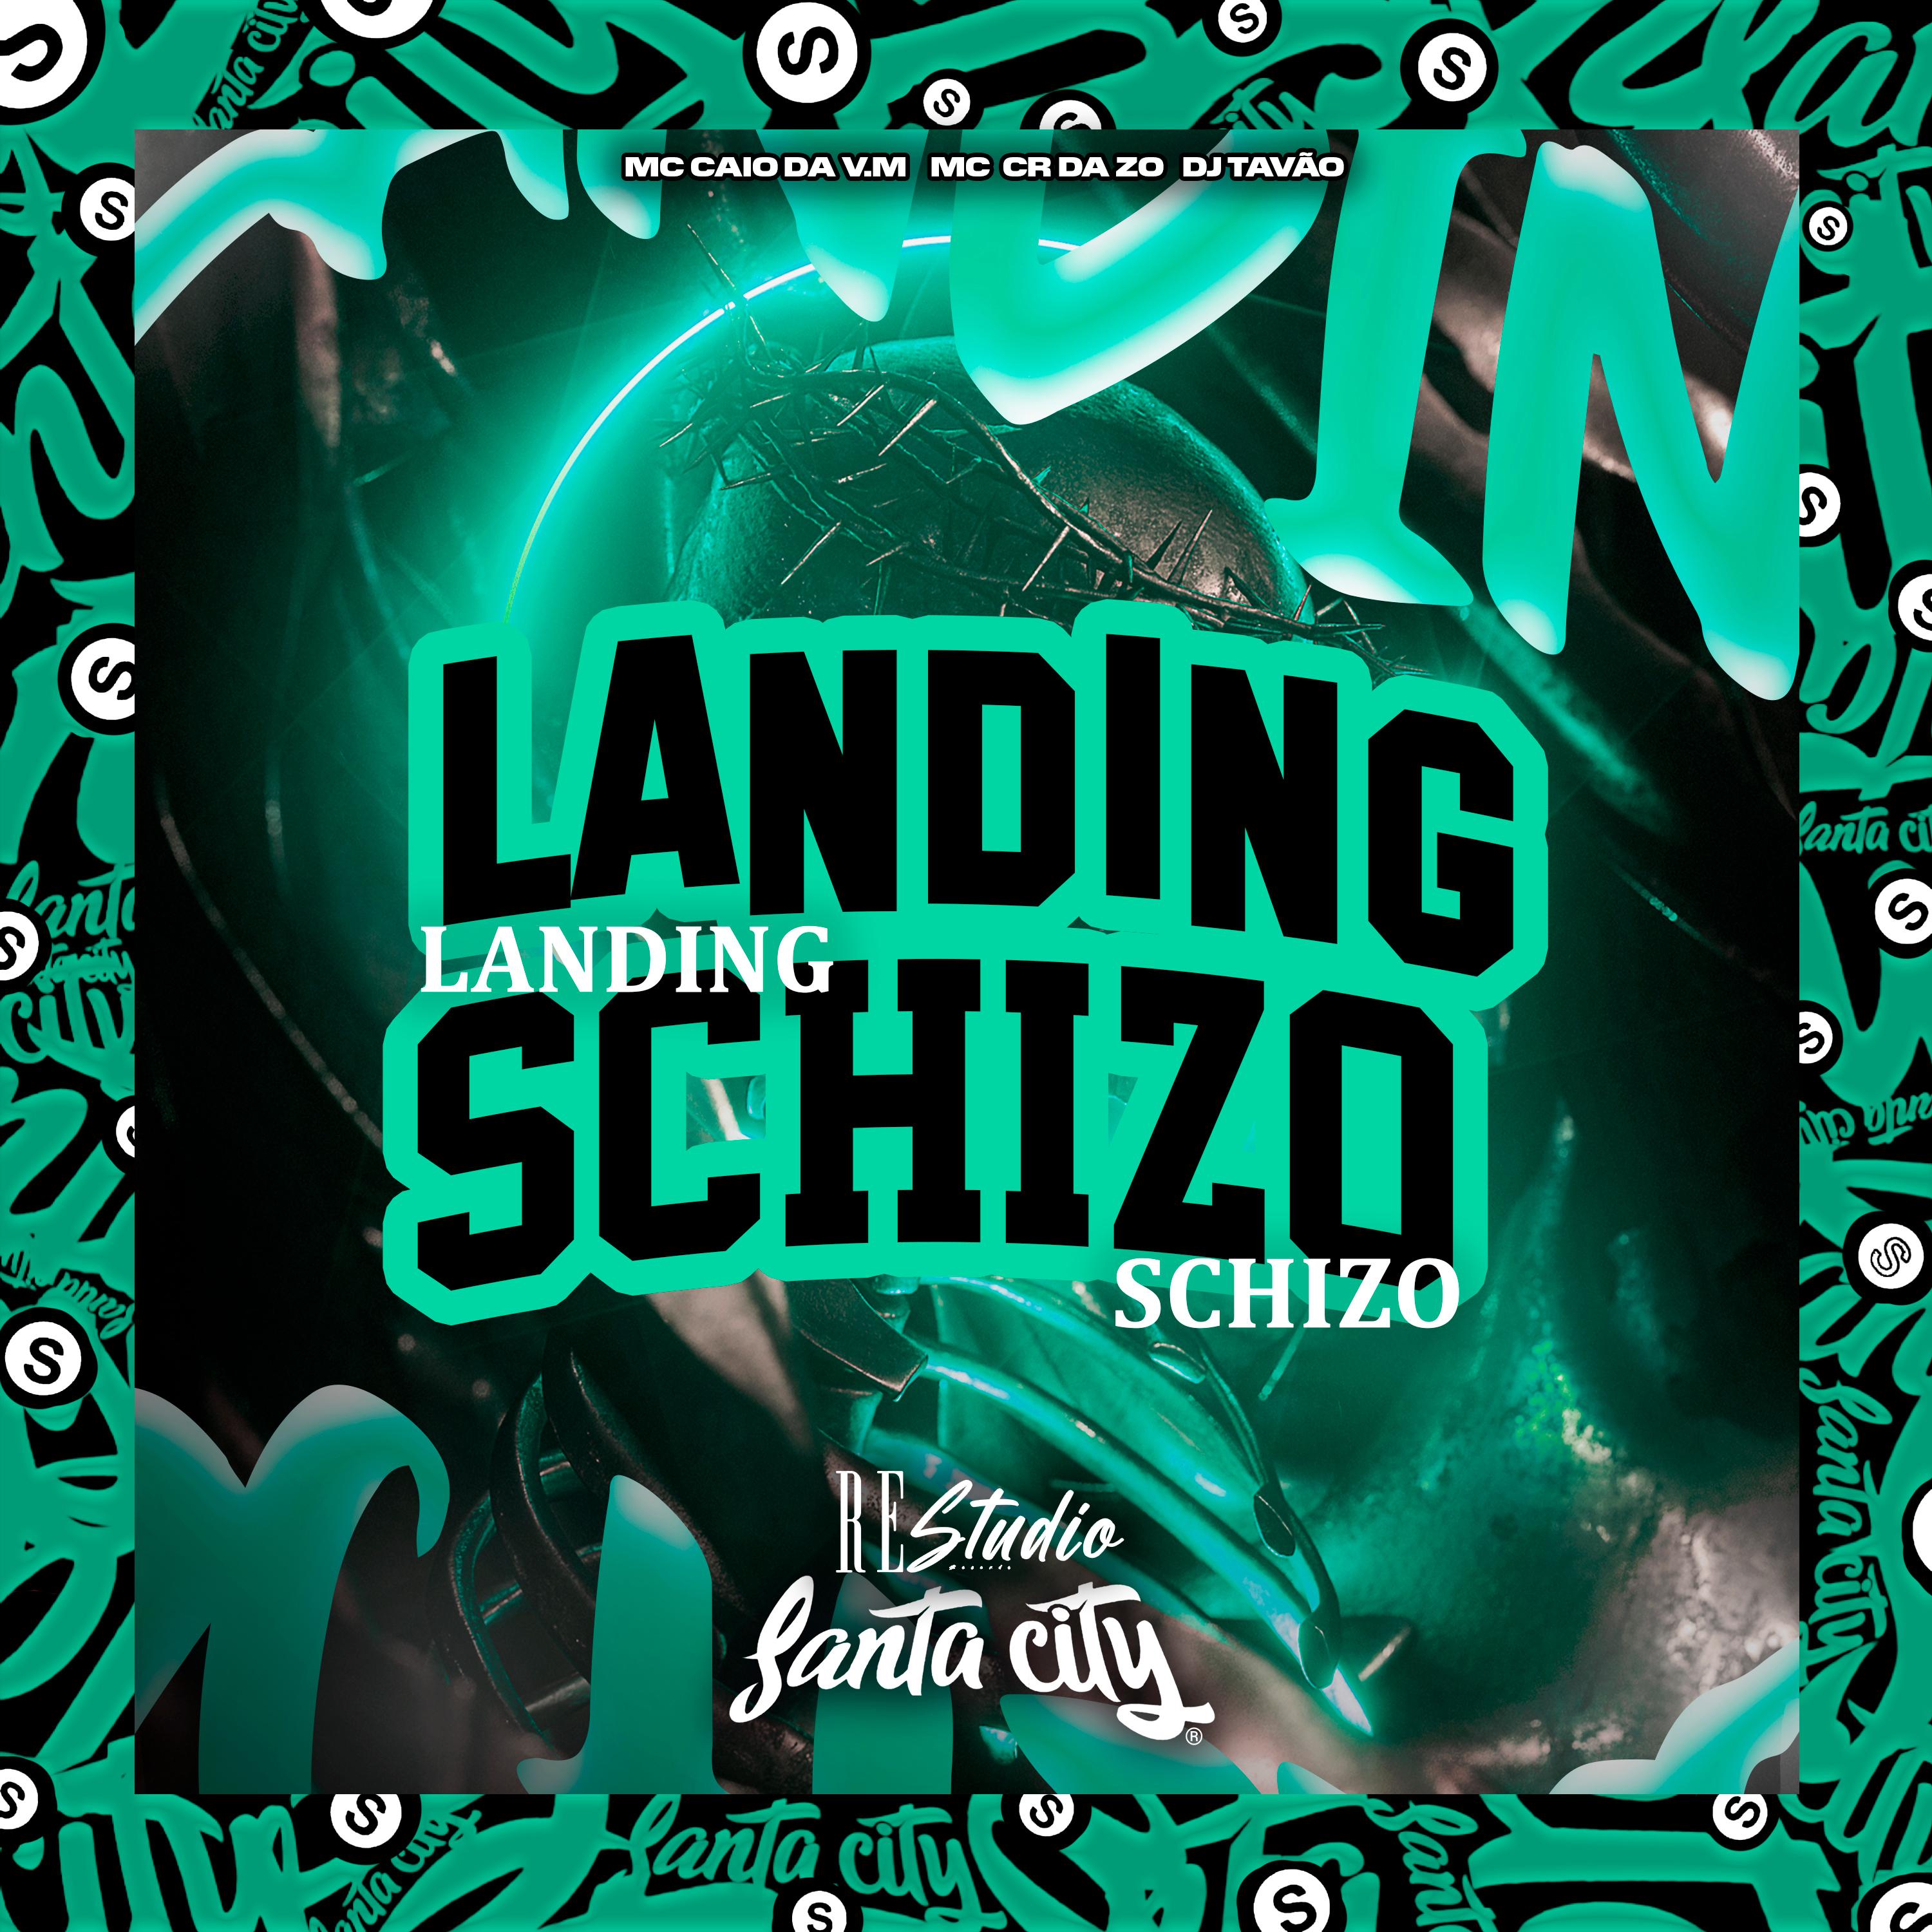 DJ TAVÃO - Landing Schizo